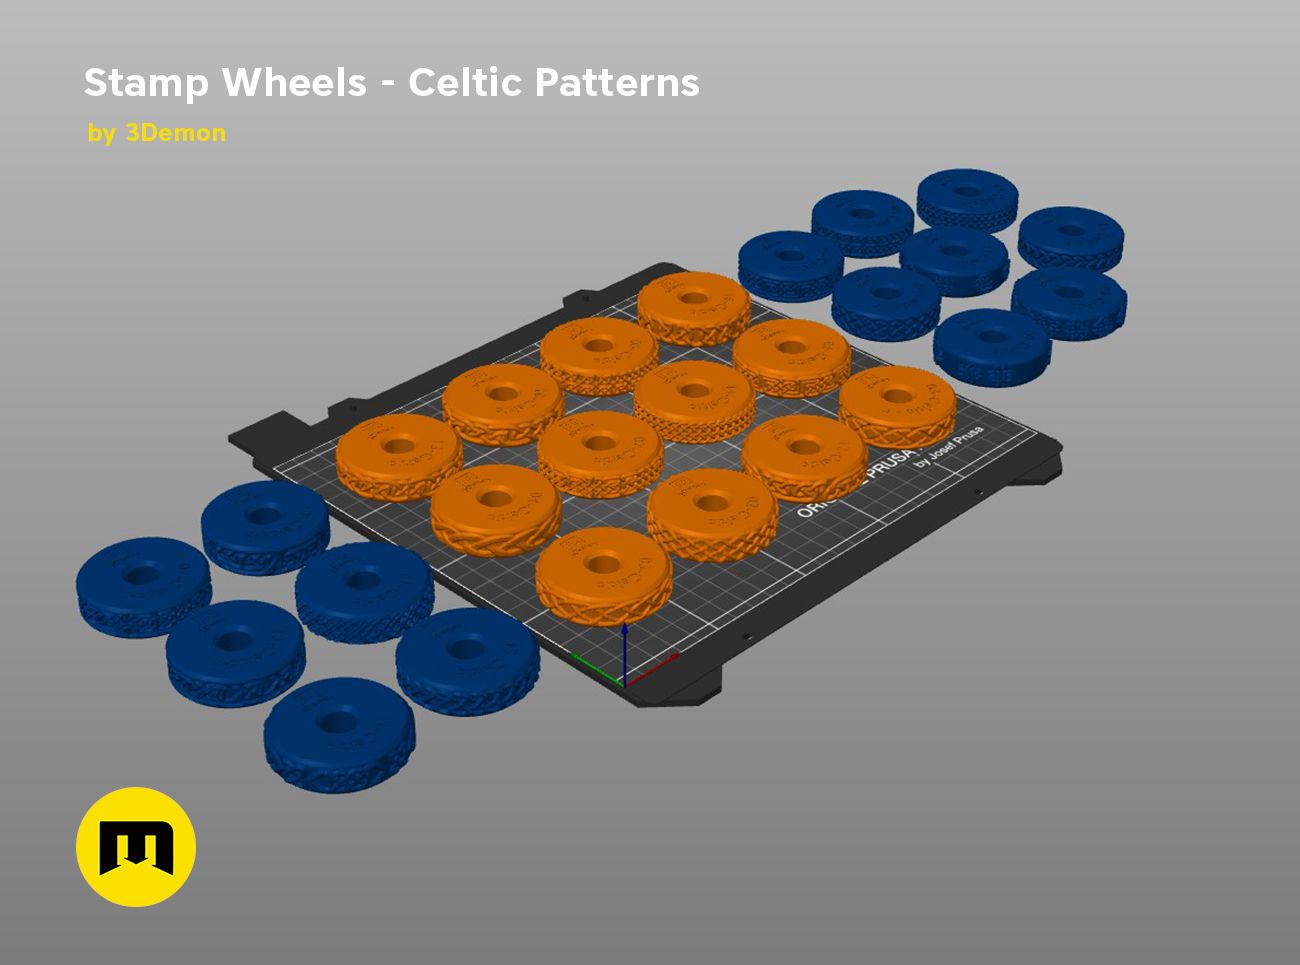 celtic-stam-wheels-prusaslicer.jpg Файл STL Штемпельные круги для глины - кельтские узоры・3D-печатная модель для загрузки, 3D-mon